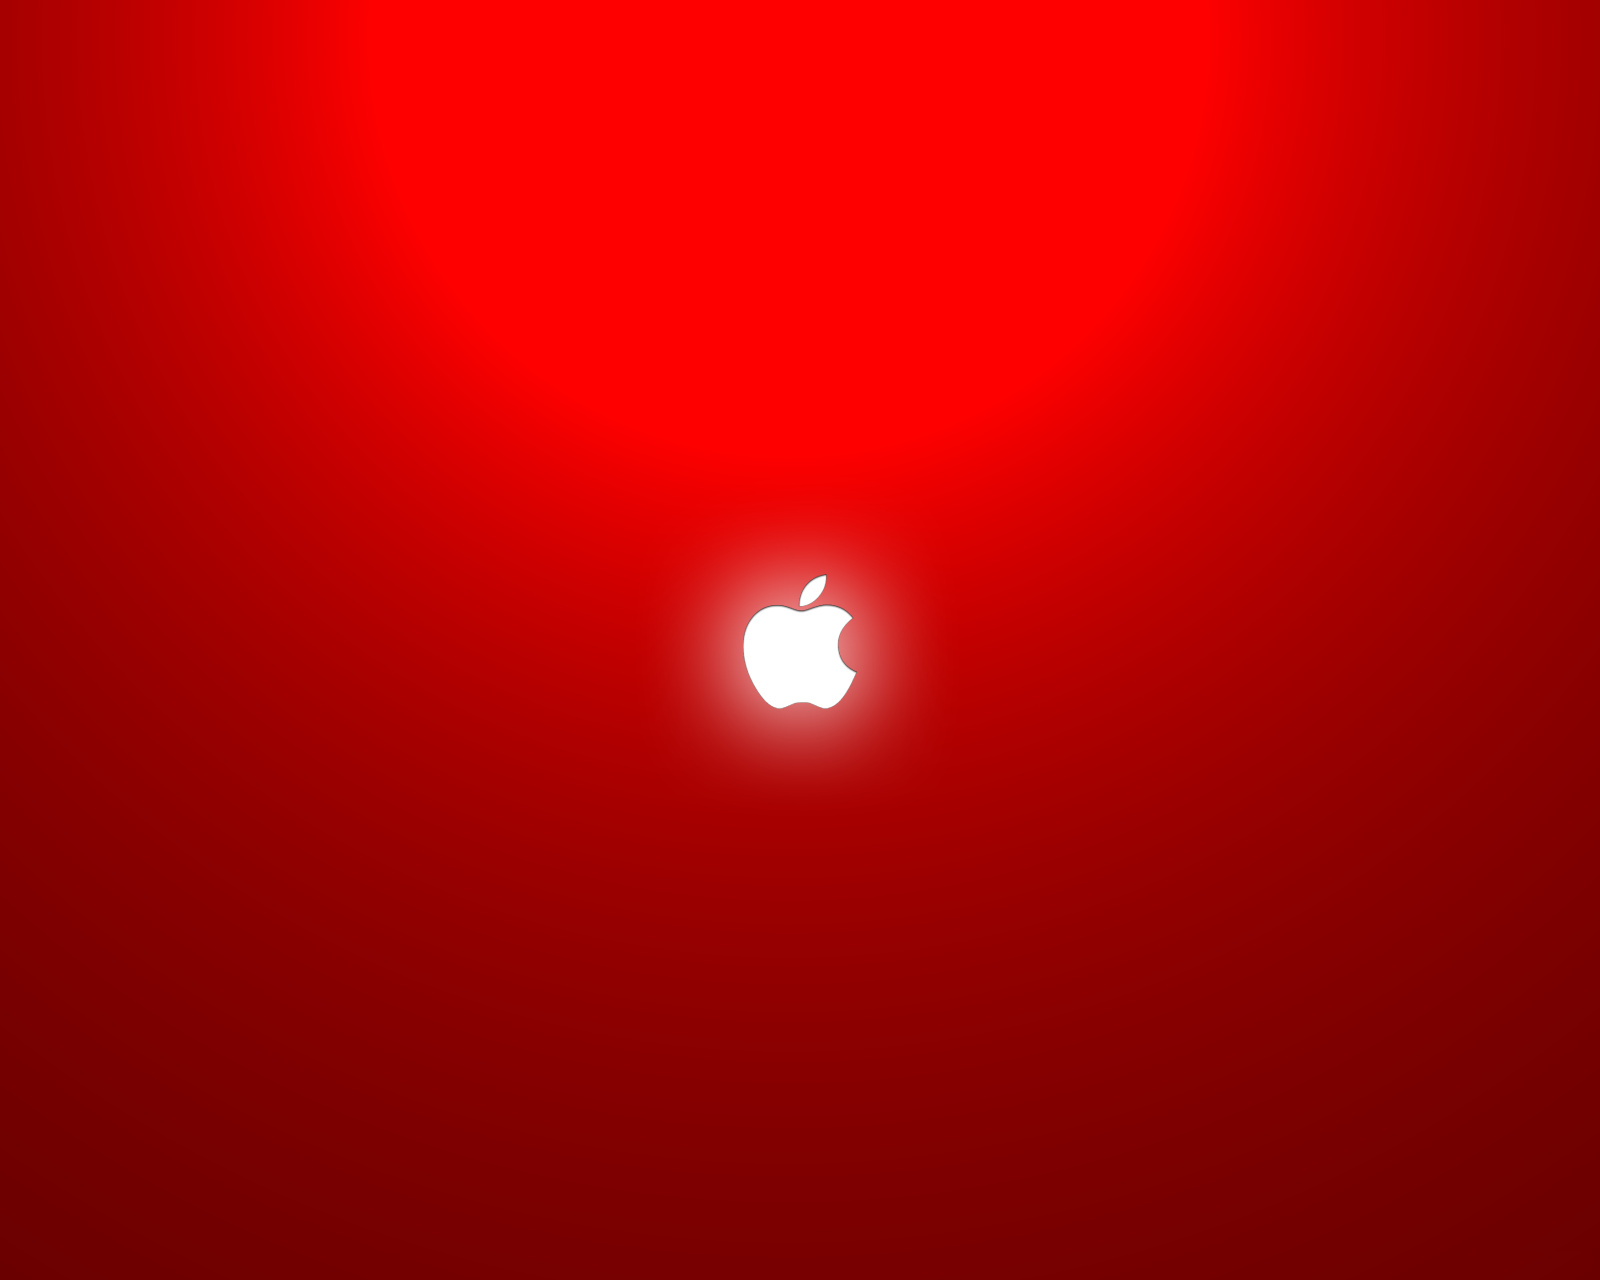 Best Red Apple HD Wallpaper For Desktop Inx